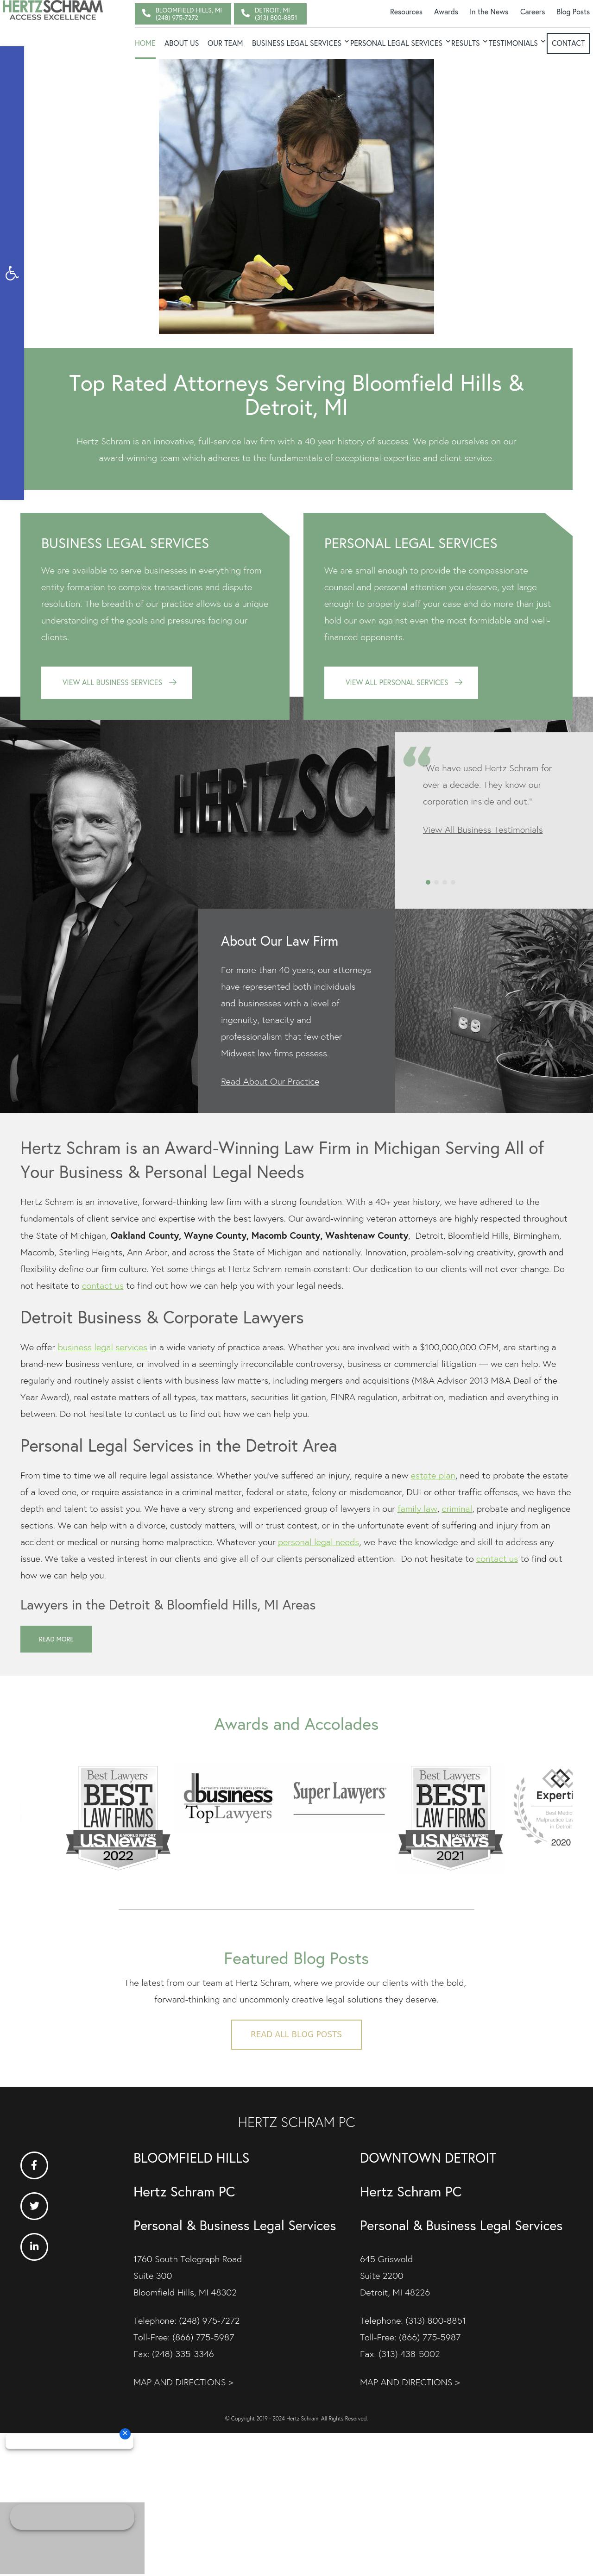 Hertz Schram PC - Bloomfield Hills MI Lawyers